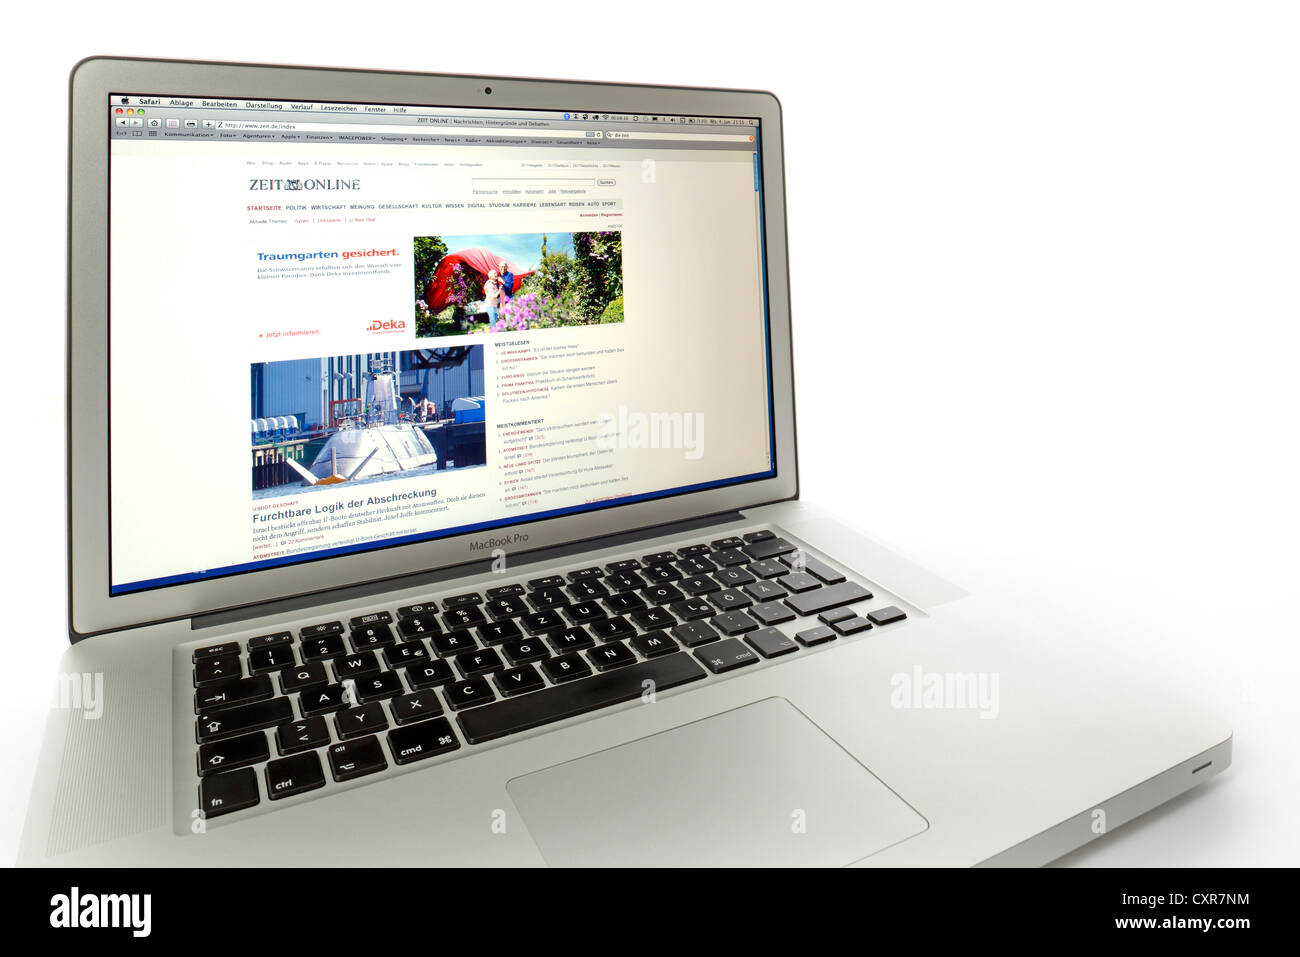 Die Zeit online, newspaper website displayed on the screen of an Apple MacBook Pro Stock Photo